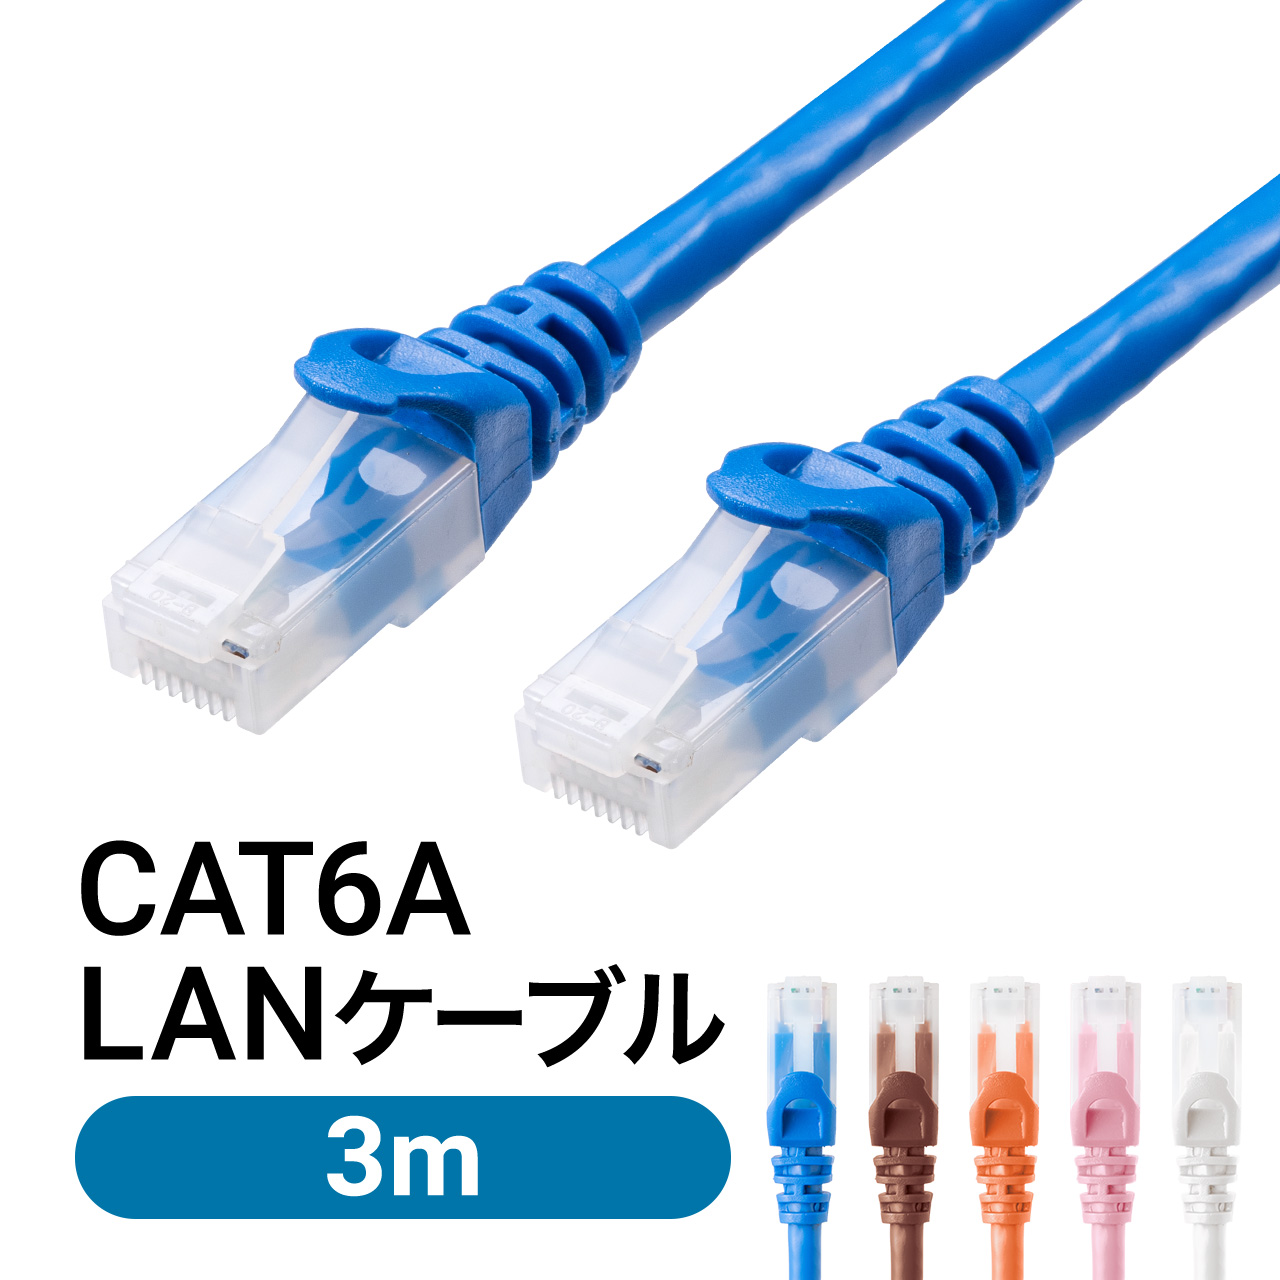 LANケーブル CAT6A 3m カテゴリ6A カテ6A ランケーブル 通信ケーブル 超高速 爪折れ防止 カバー付き より線 ストレート 全結線 PoE対応 500-LAN6AN-03